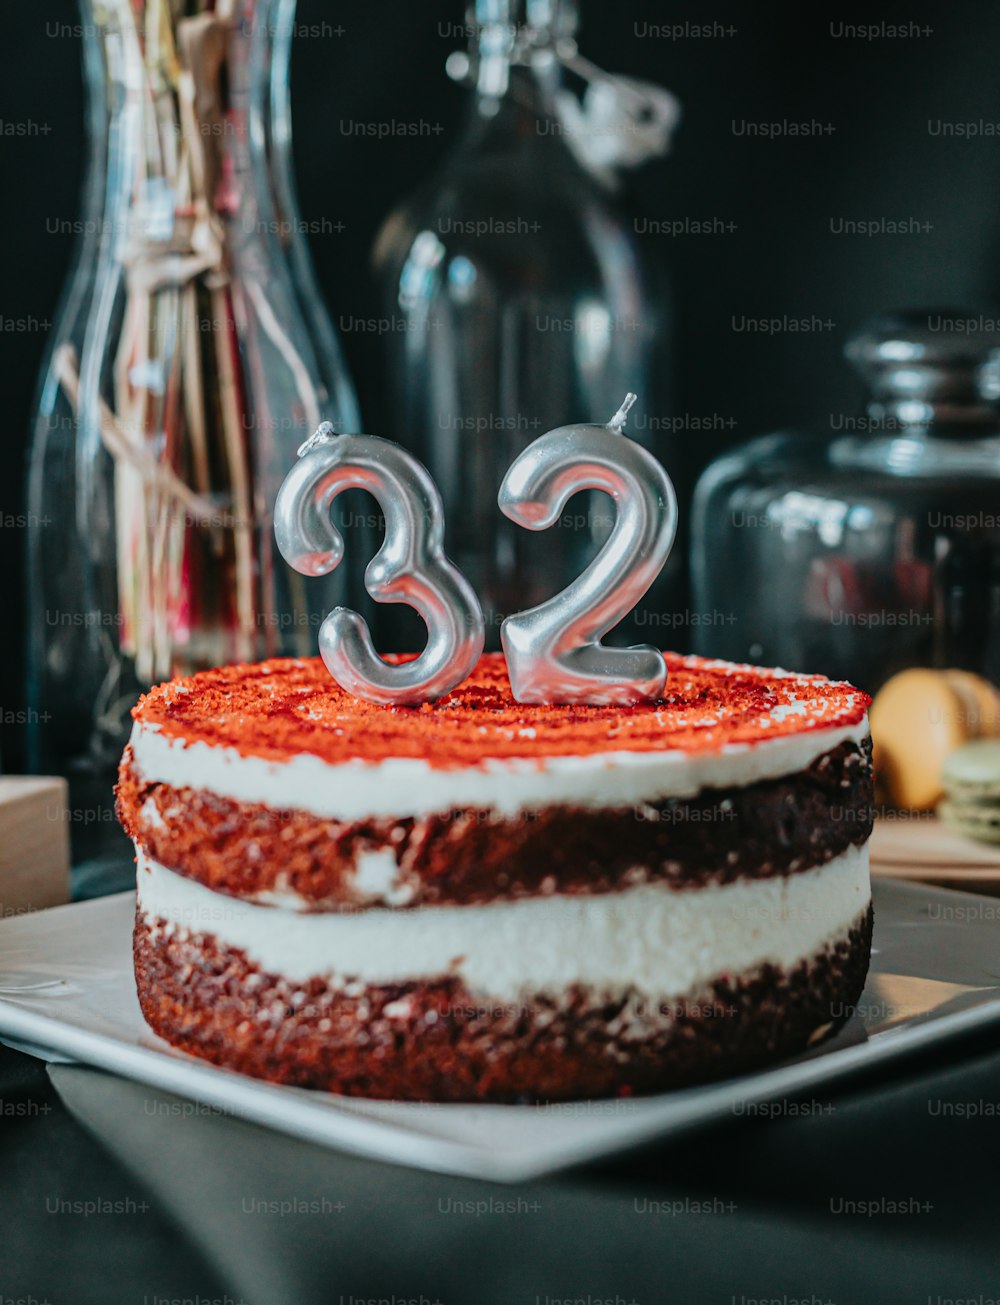 숫자 32가 적힌 빨간색과 흰색 케이크